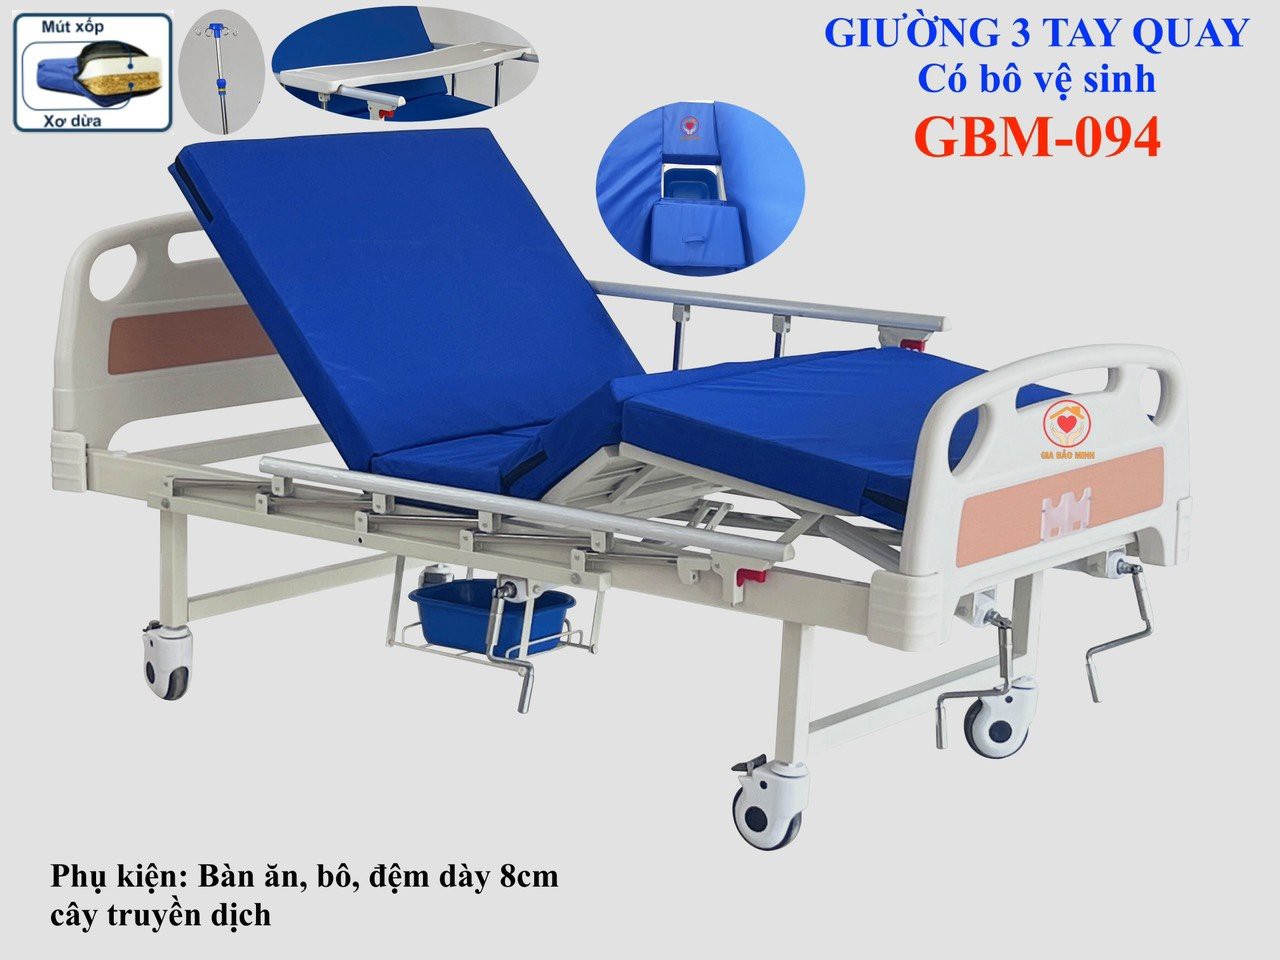 Giường y tế 3 tay quay có bô GBM-094